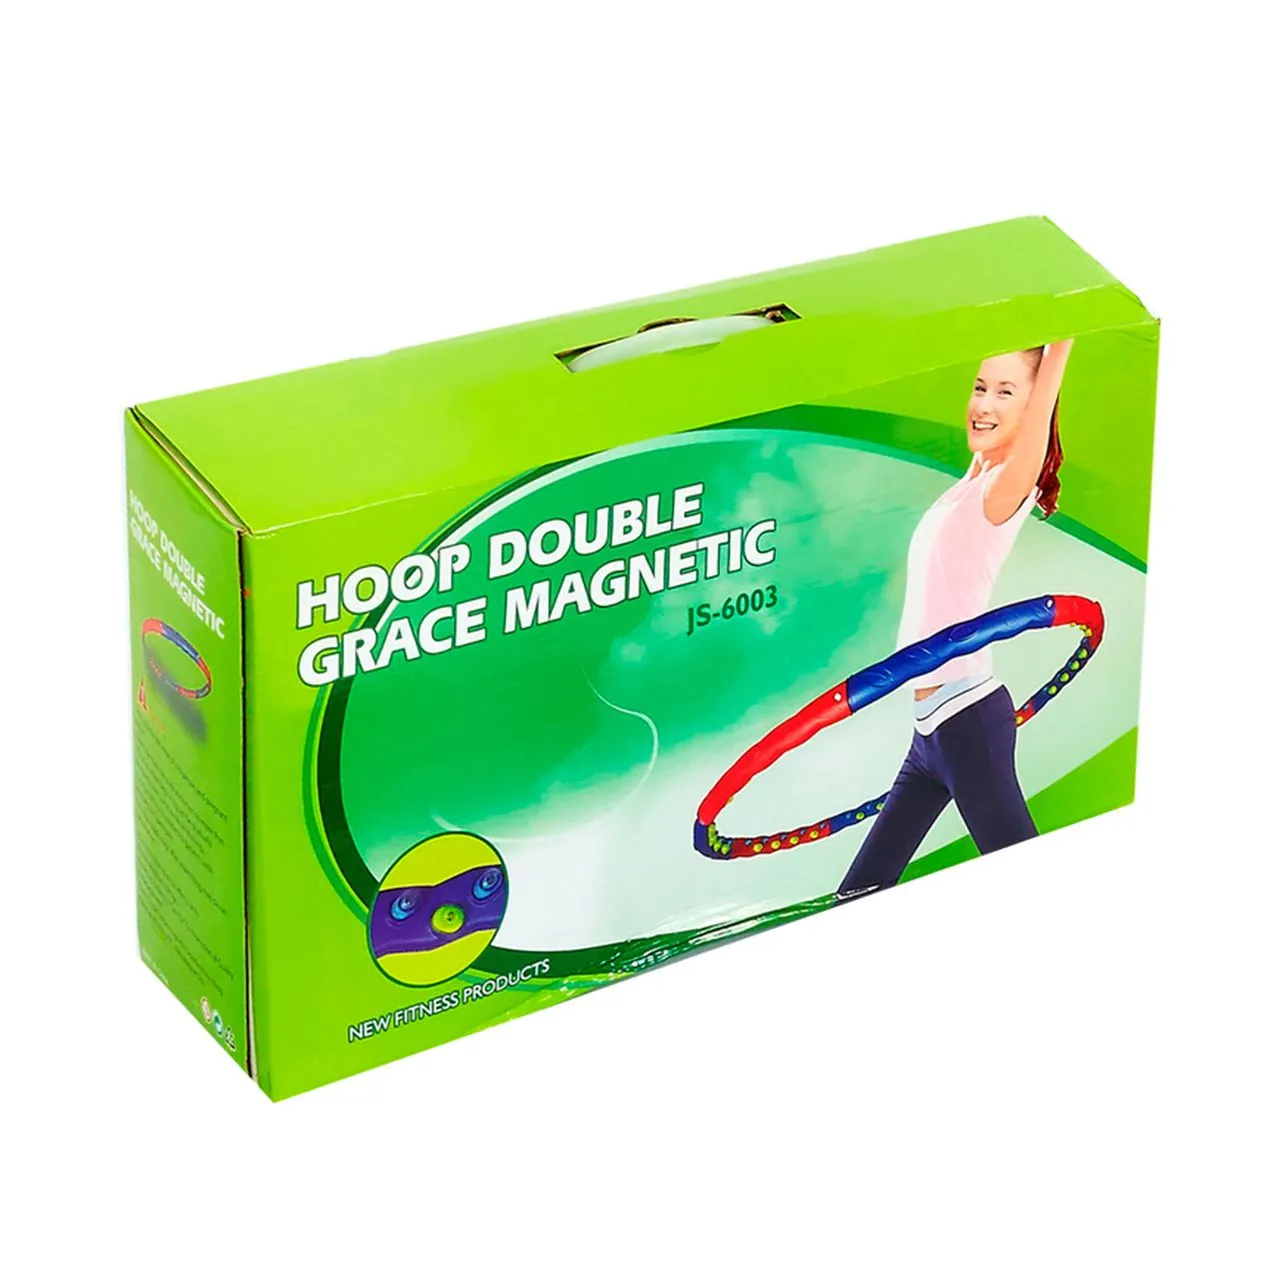 Обруч Hoop Double Grace Magnetic, JS-6003, 1.4 кг#4